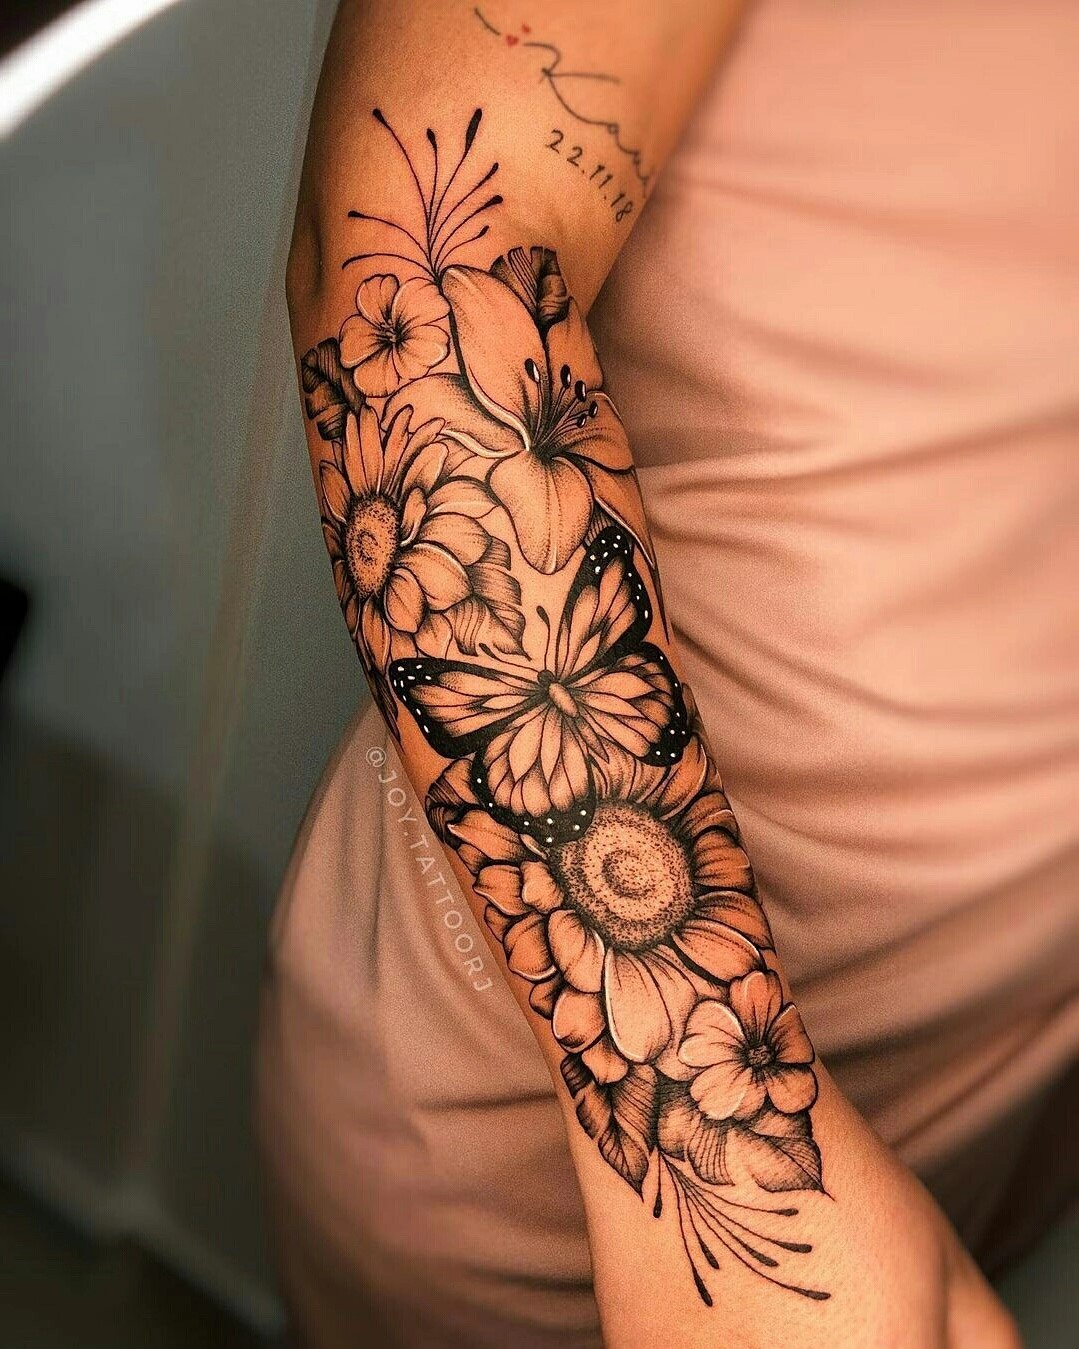 Tatuagem de Borboleta no Braço Com Flores